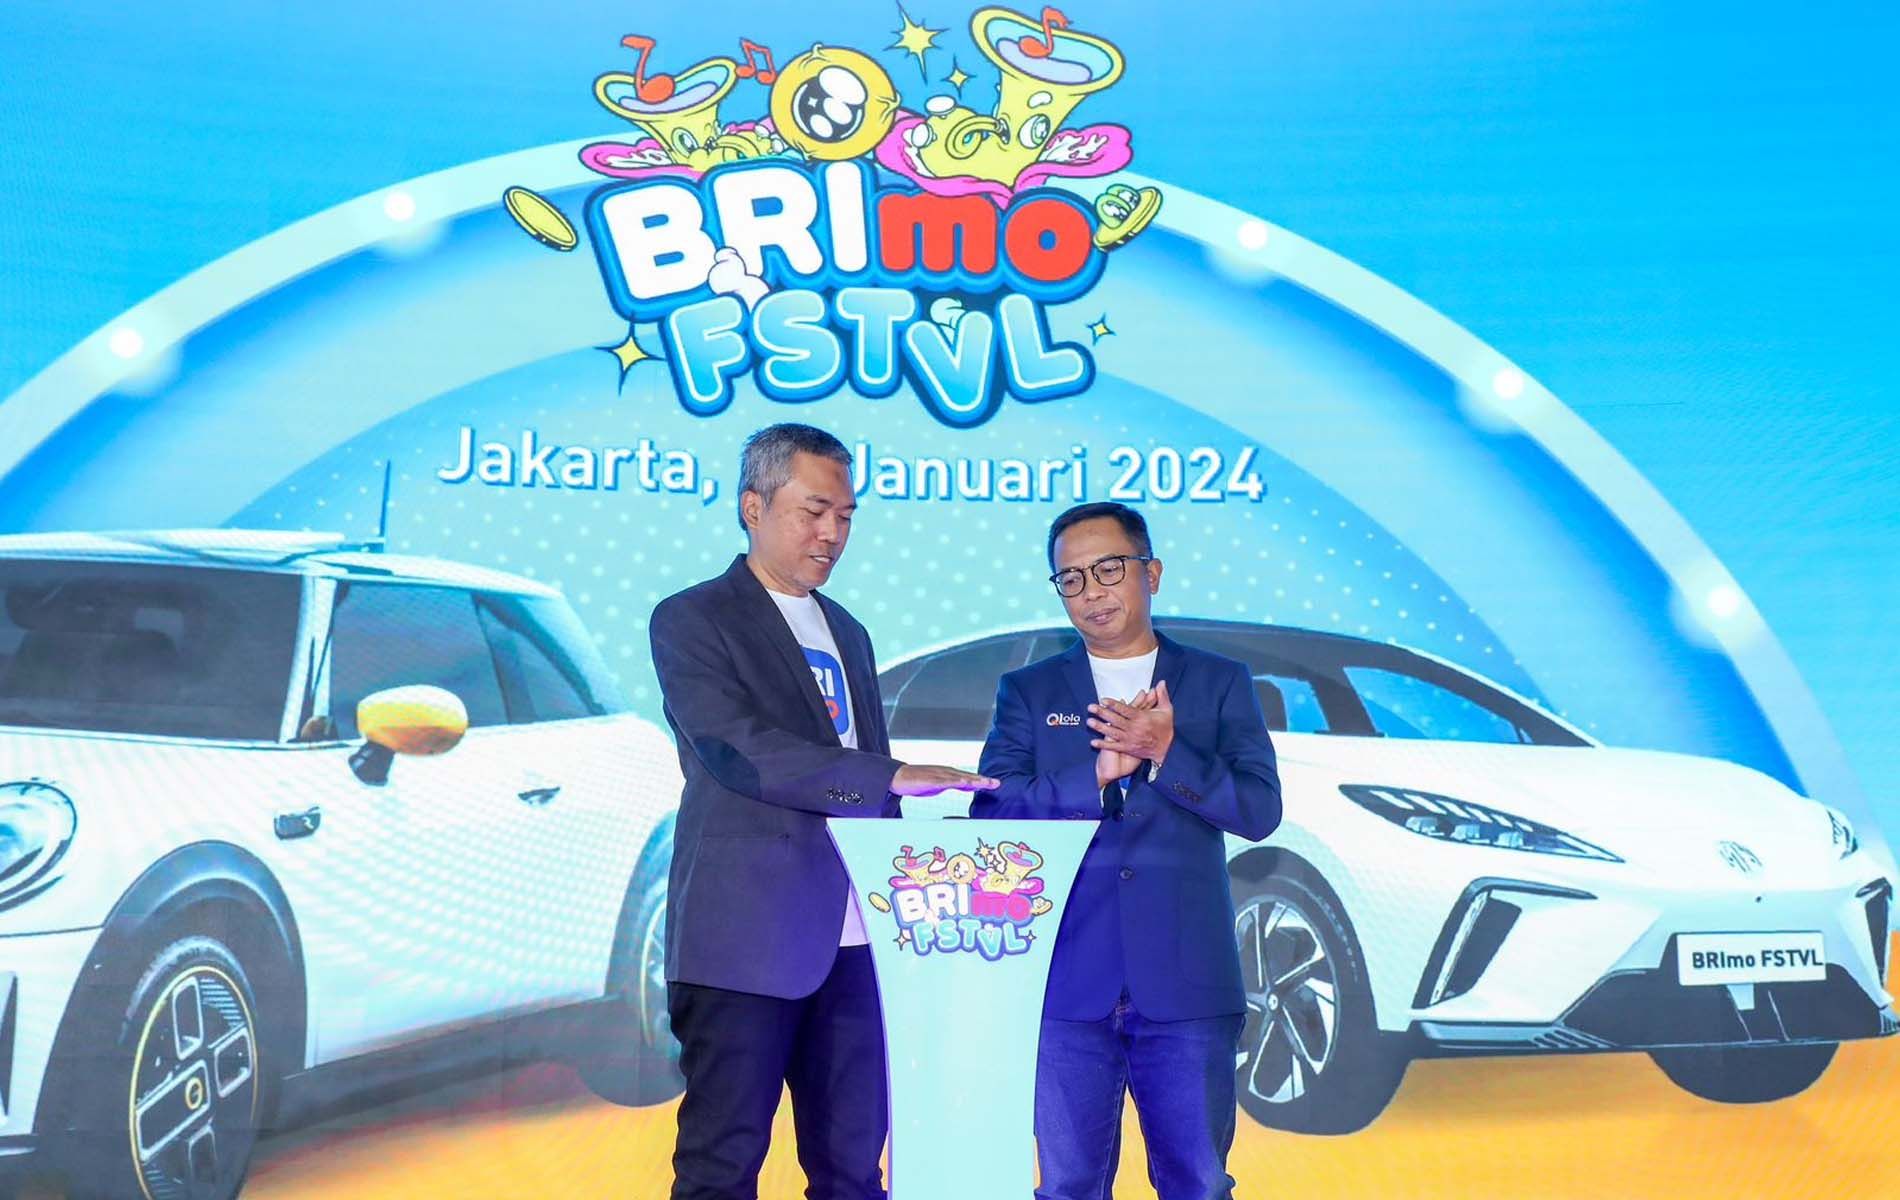 Rangkaian acara pada BRImo FVTVL, Jakarta 25 Januari 2024.